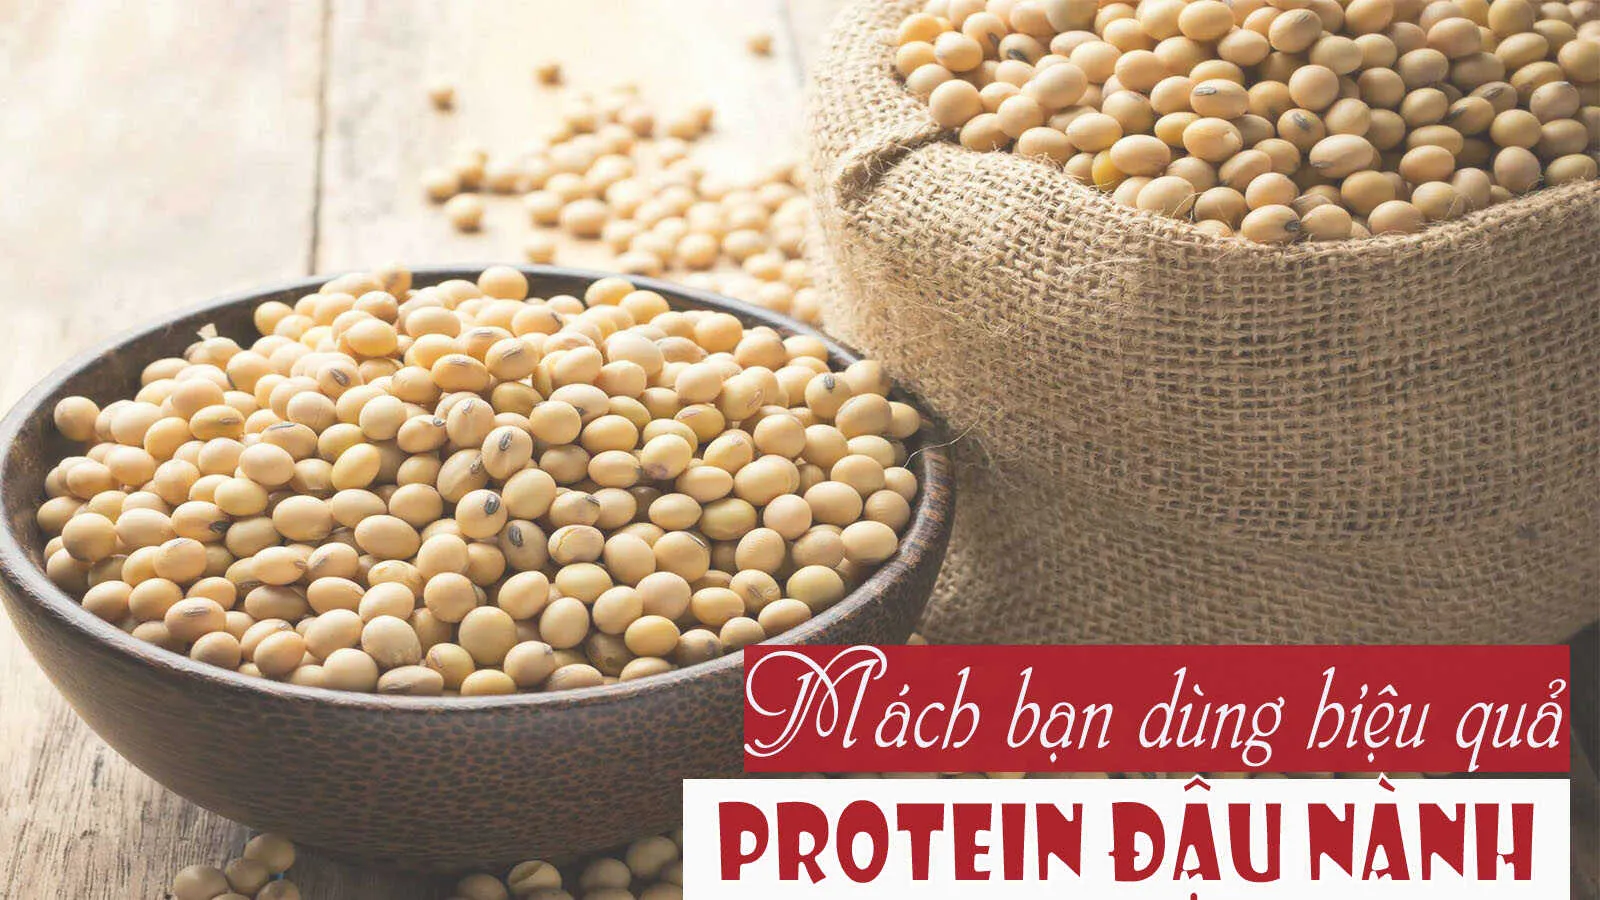 Sử dụng protein đậu nành có tốt cho sức khỏe không?